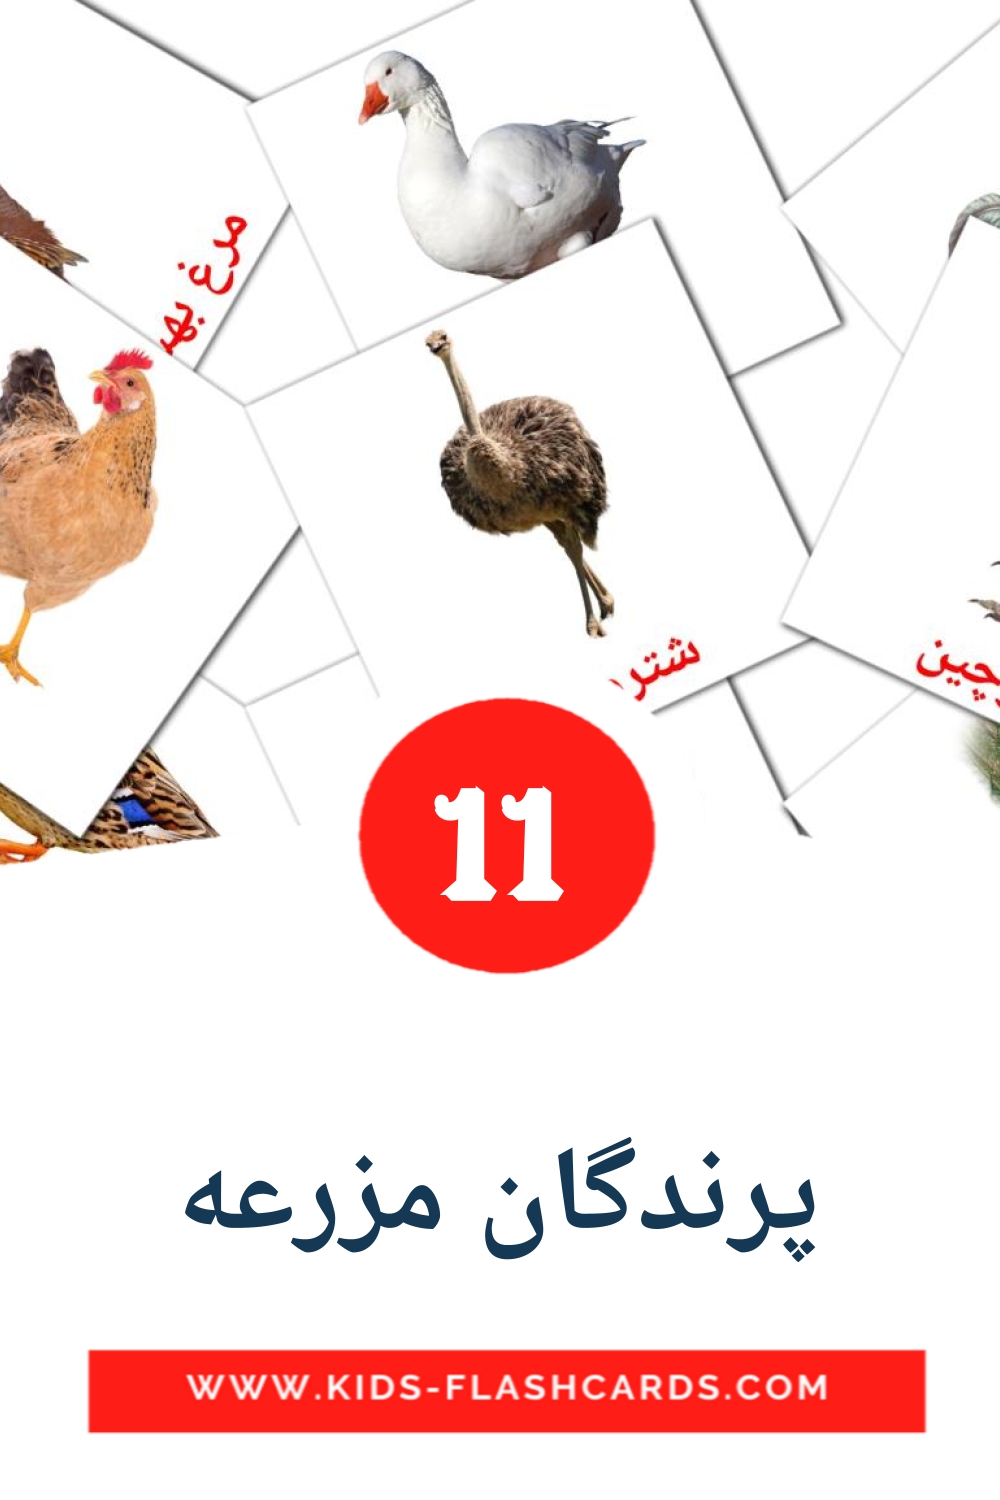 11 پرندگان مزرعه Picture Cards for Kindergarden in persian